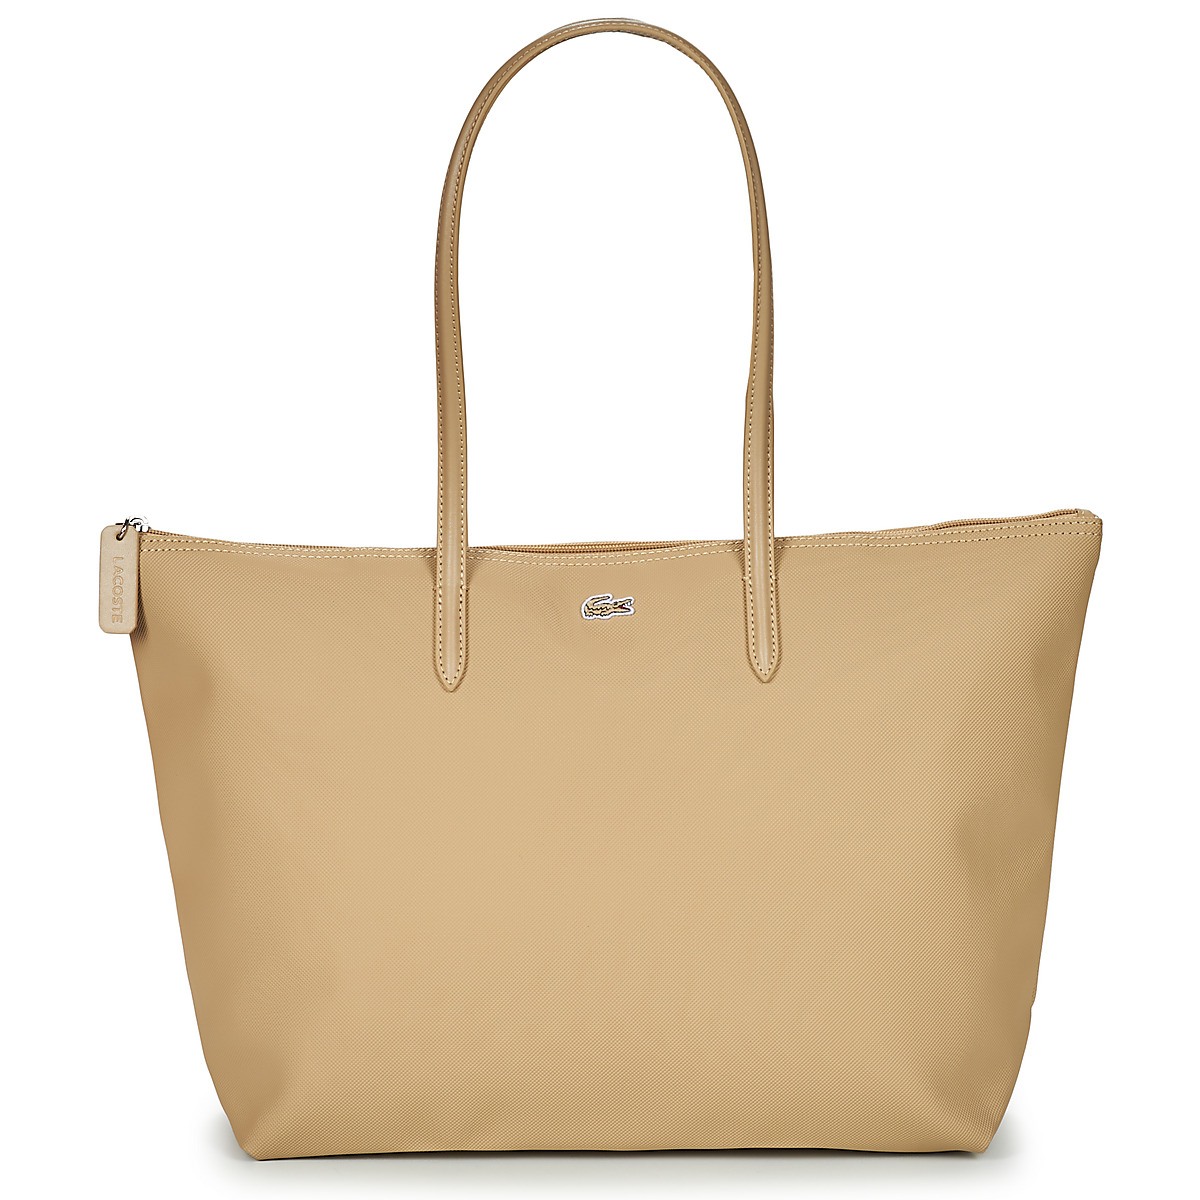 Borse Donna Tote bag / Borsa shopping Lacoste L.12.12 CONCEPT L 